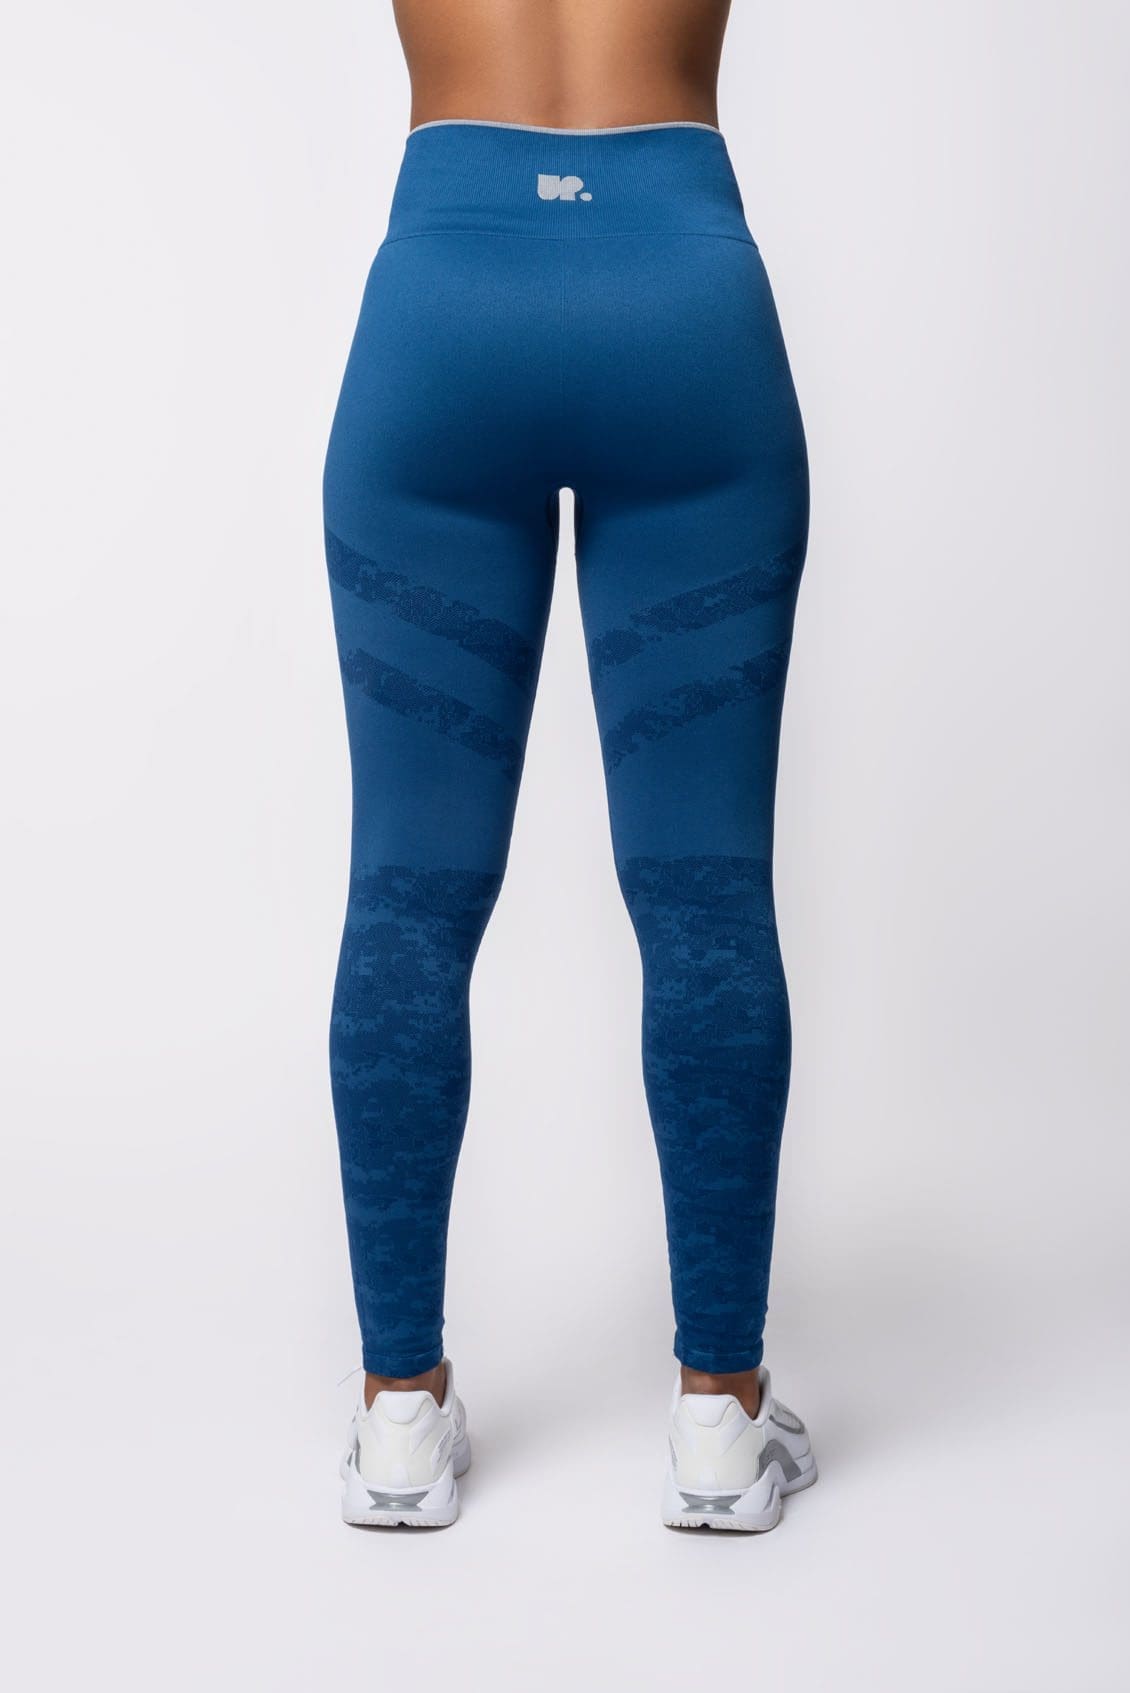 Alphalete, Pants & Jumpsuits, Alphalete Og Revival Leggings Sonic Blue